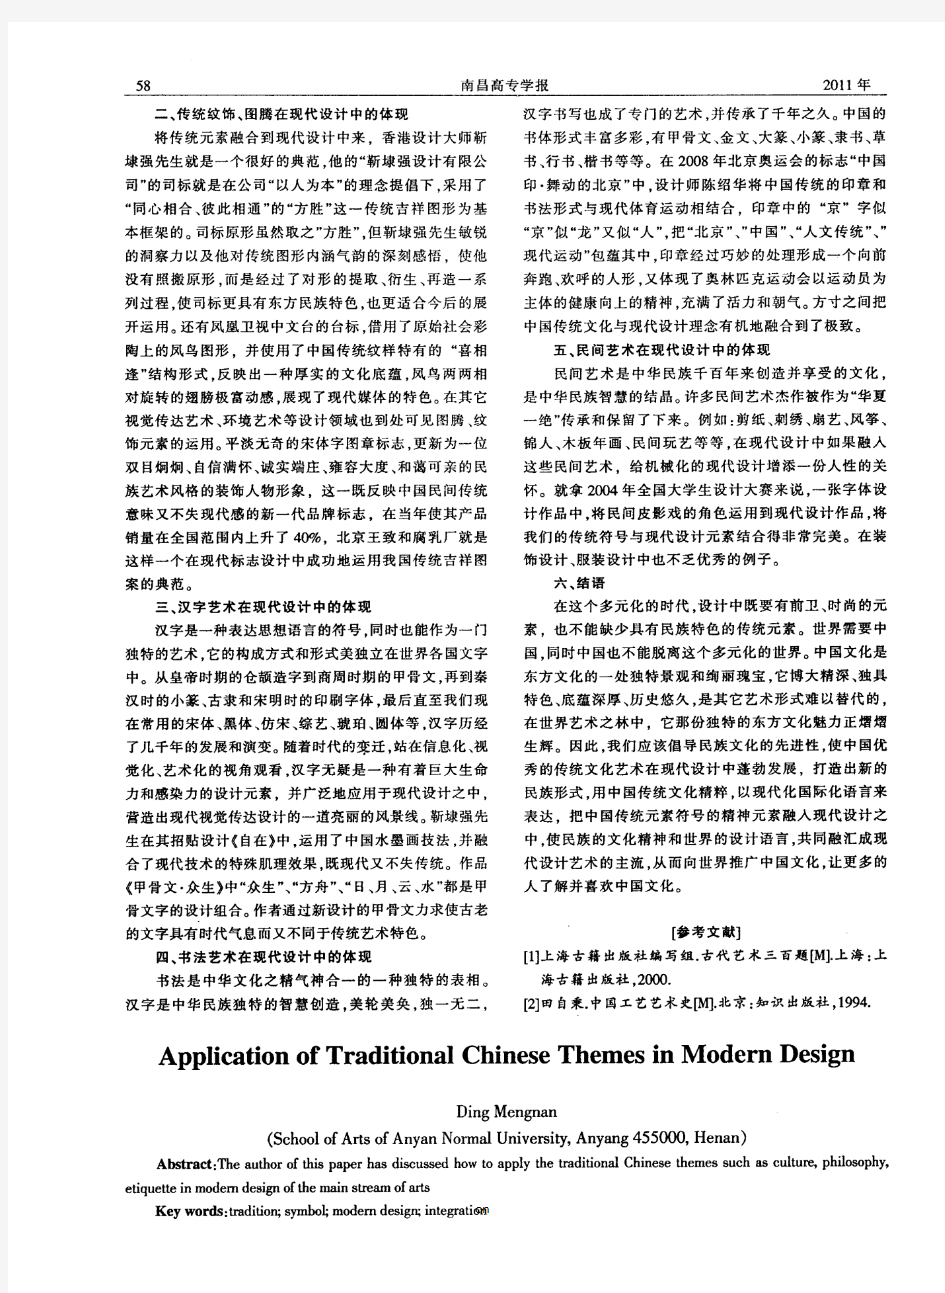 谈中国传统元素在现代设计中的应用